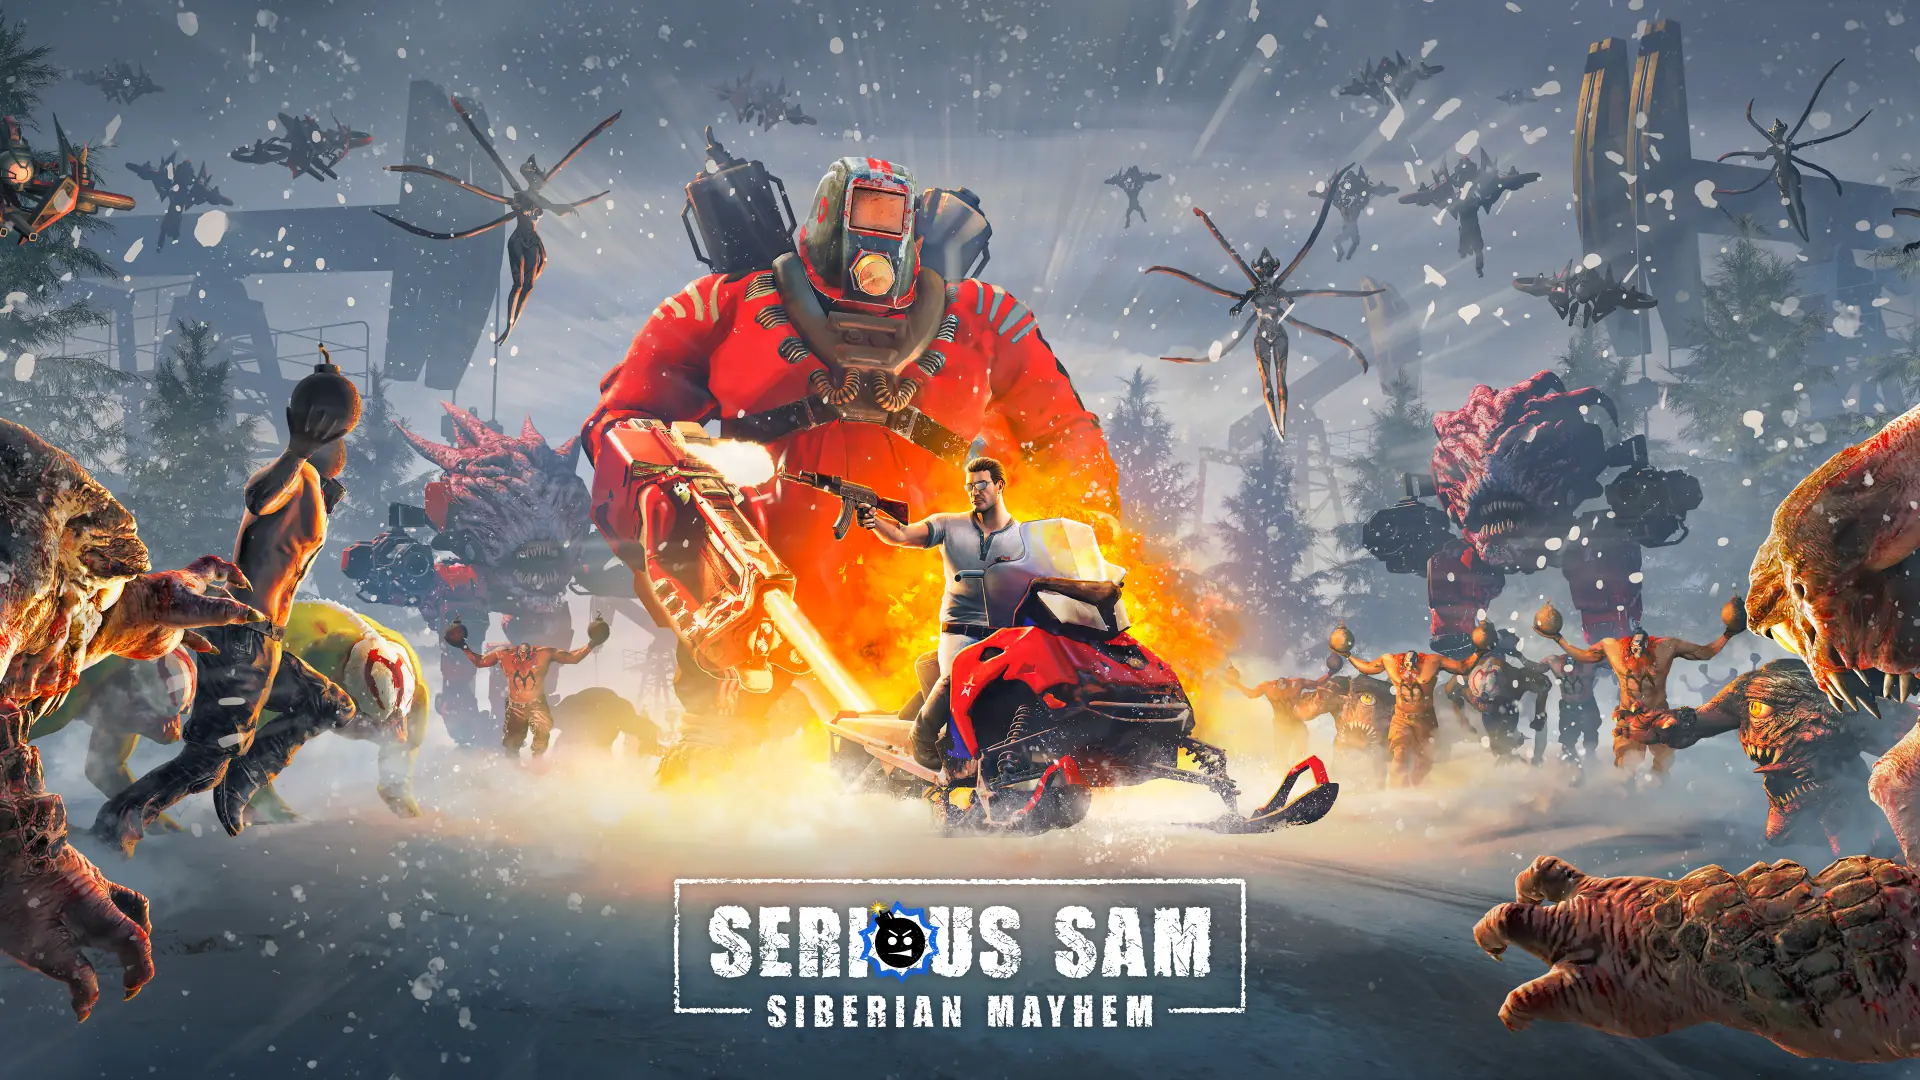 Serious Sam Siberian Mayhem Key art 1920x1080